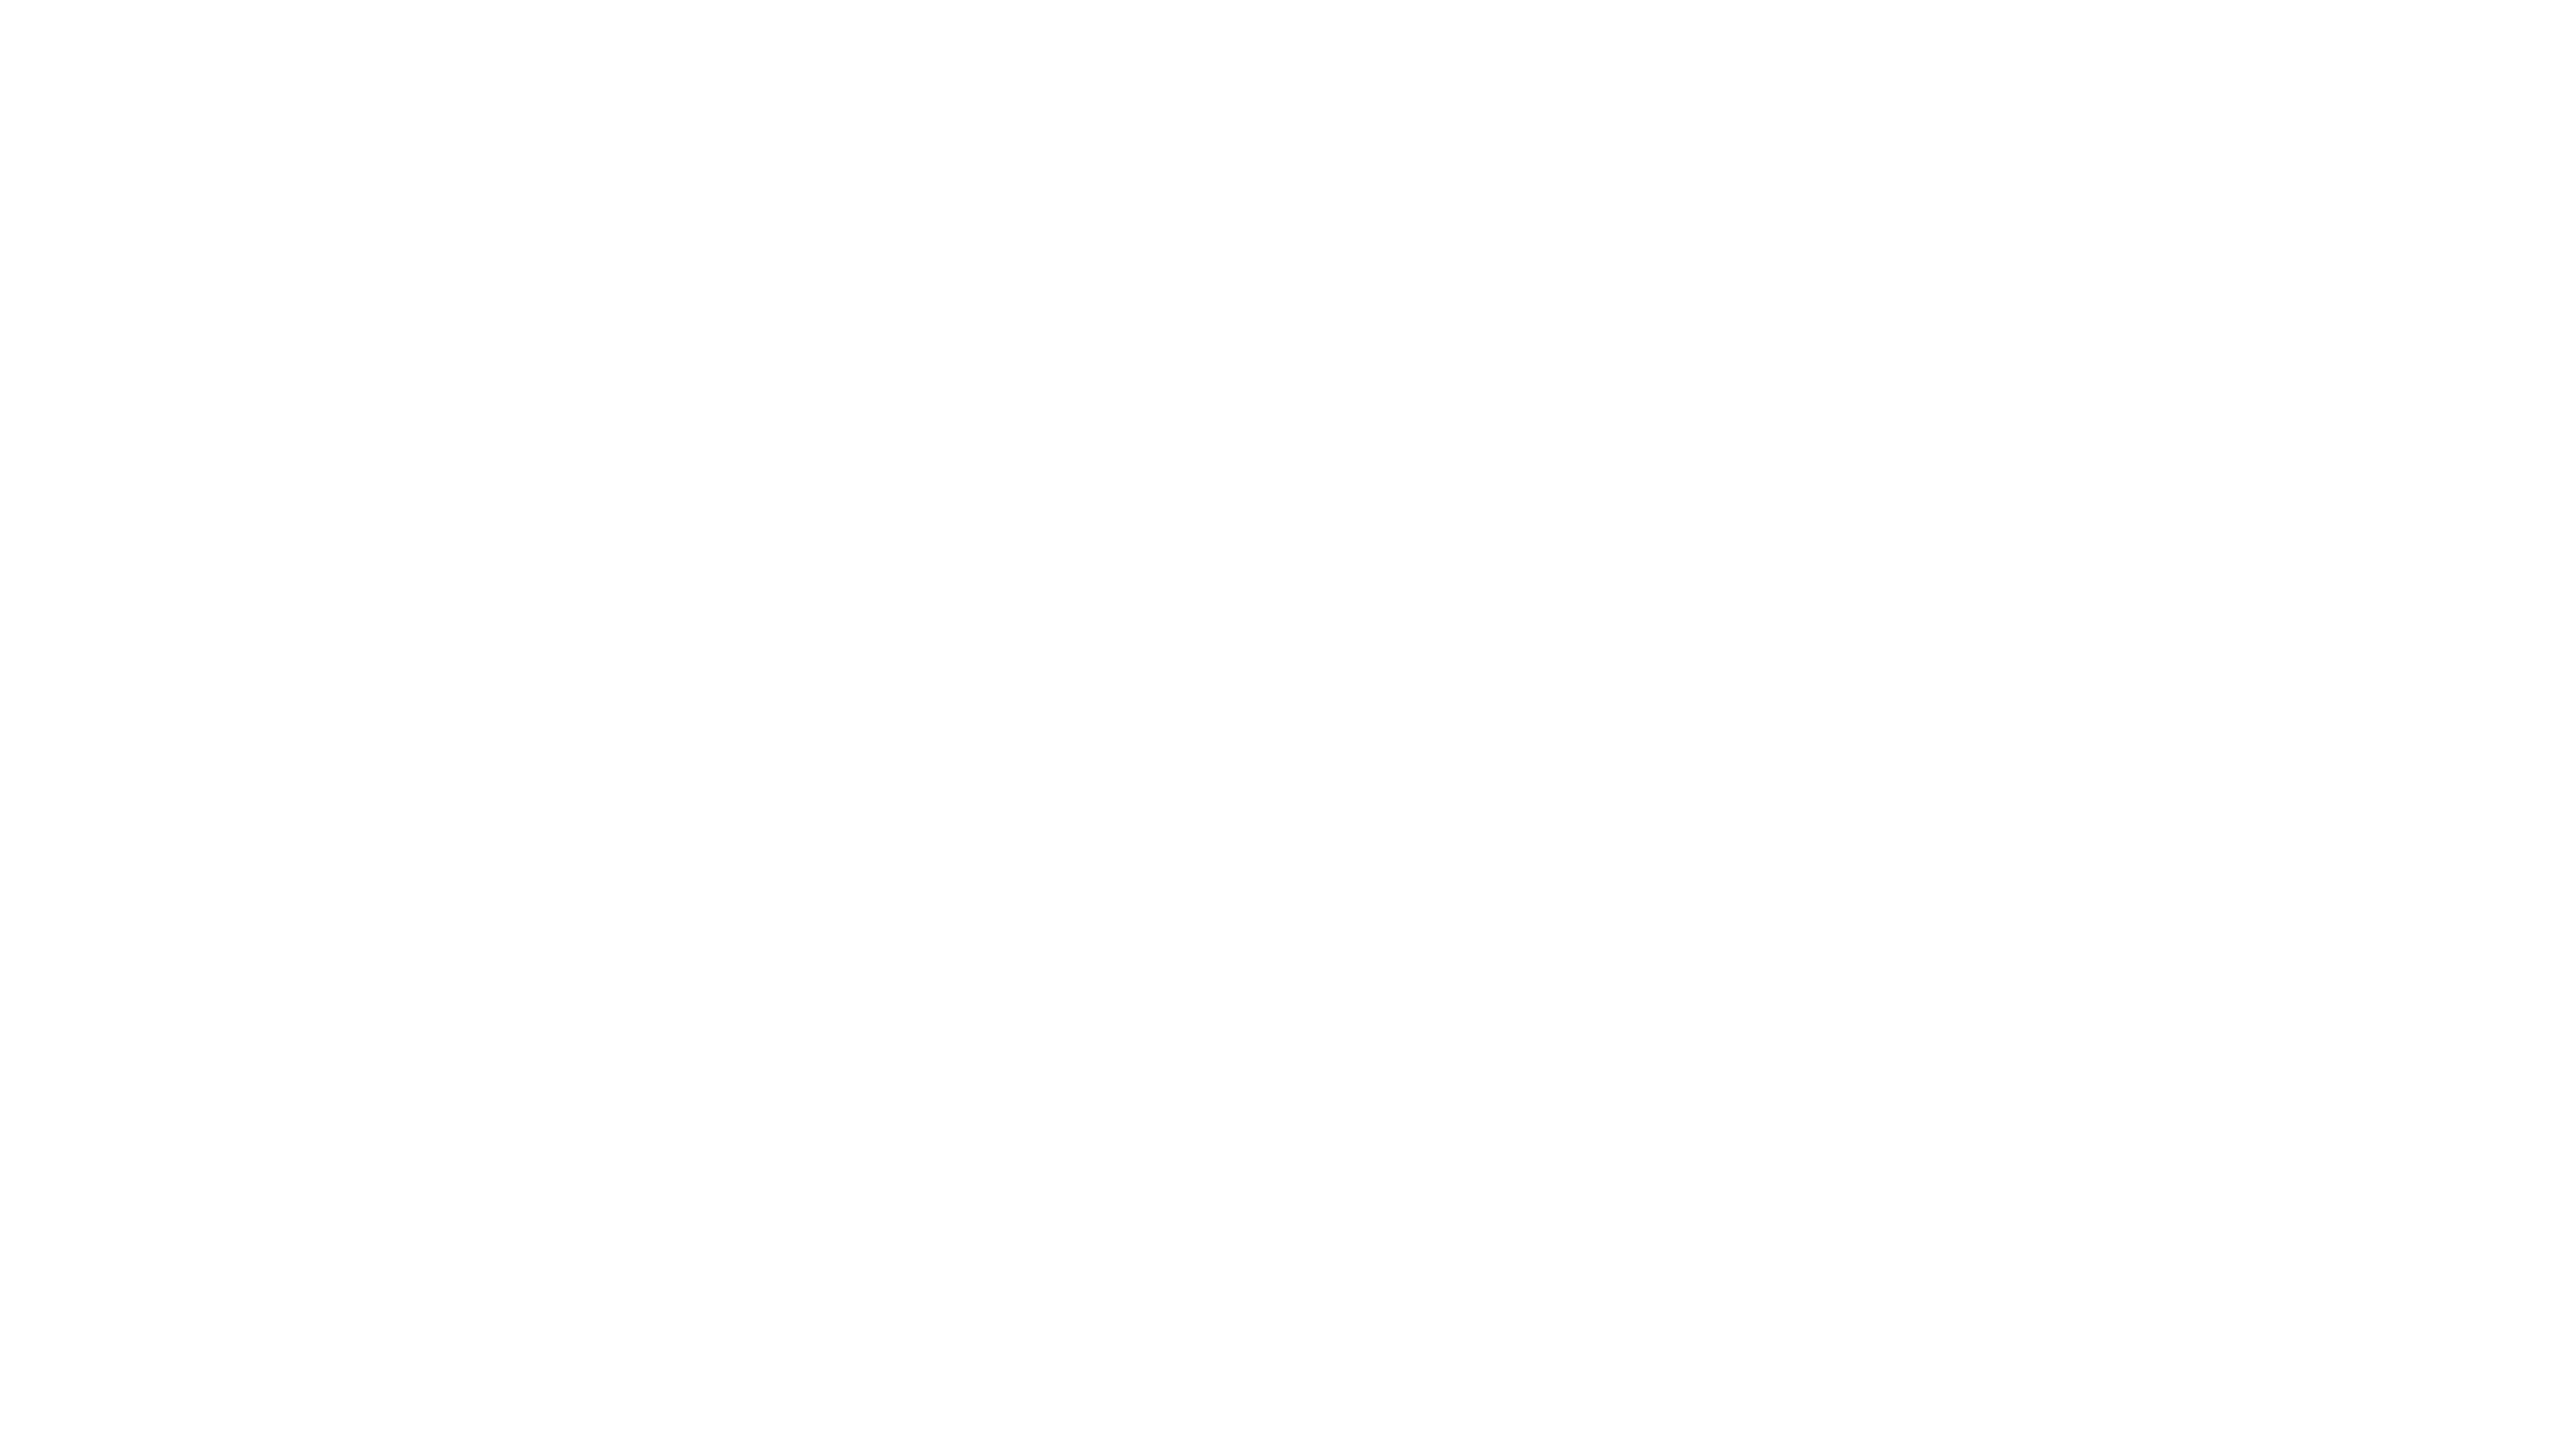 InforArte Studio's